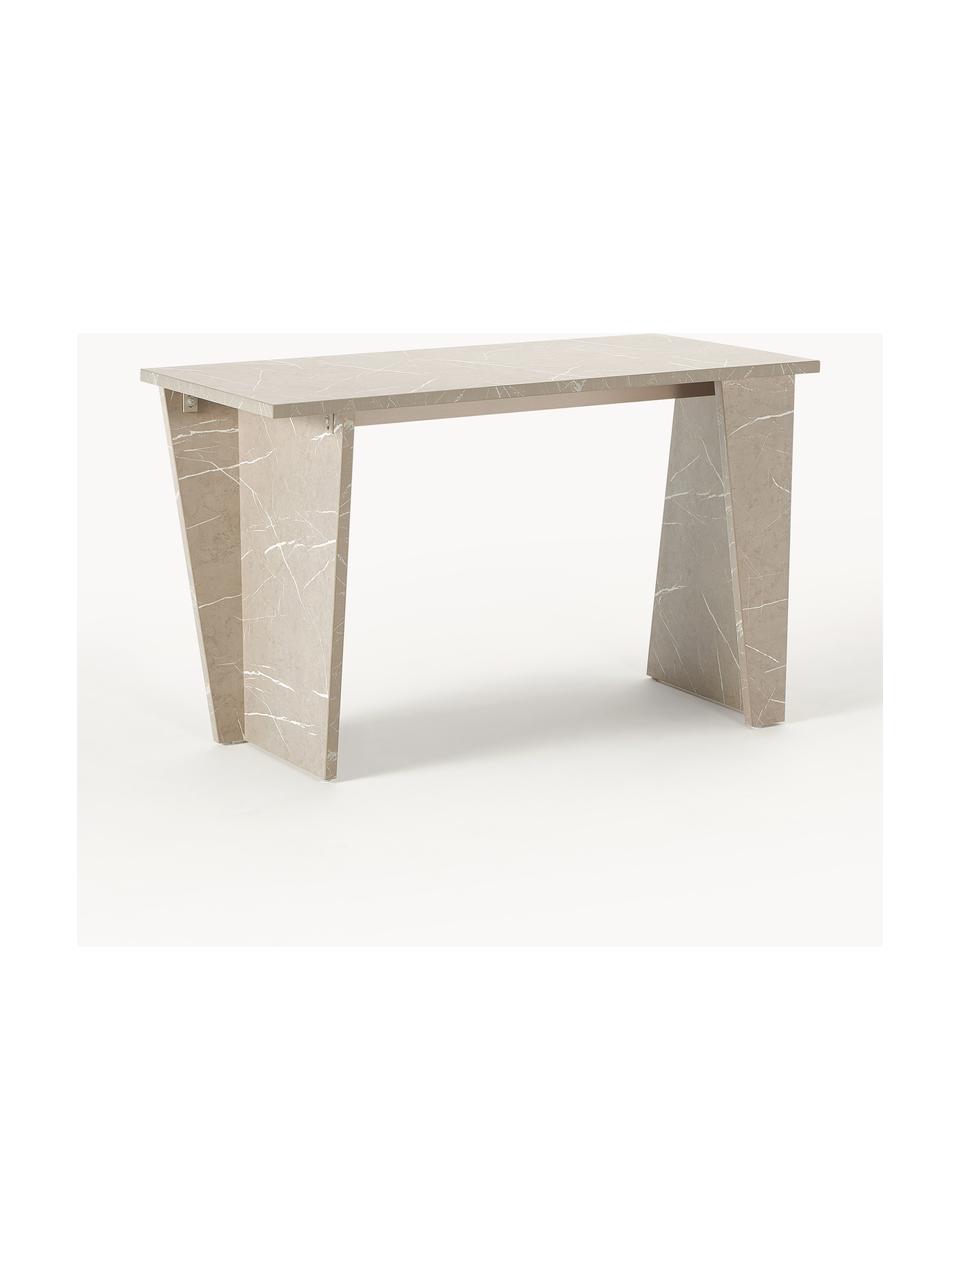 Psací stůl v travertinovém vzhledu Liam, MDF deska (dřevovláknitá deska střední hustoty) pokrytá melaminovou fólií, Béžová v travertinovém vzhledu, Š 120 cm, V 75 cm